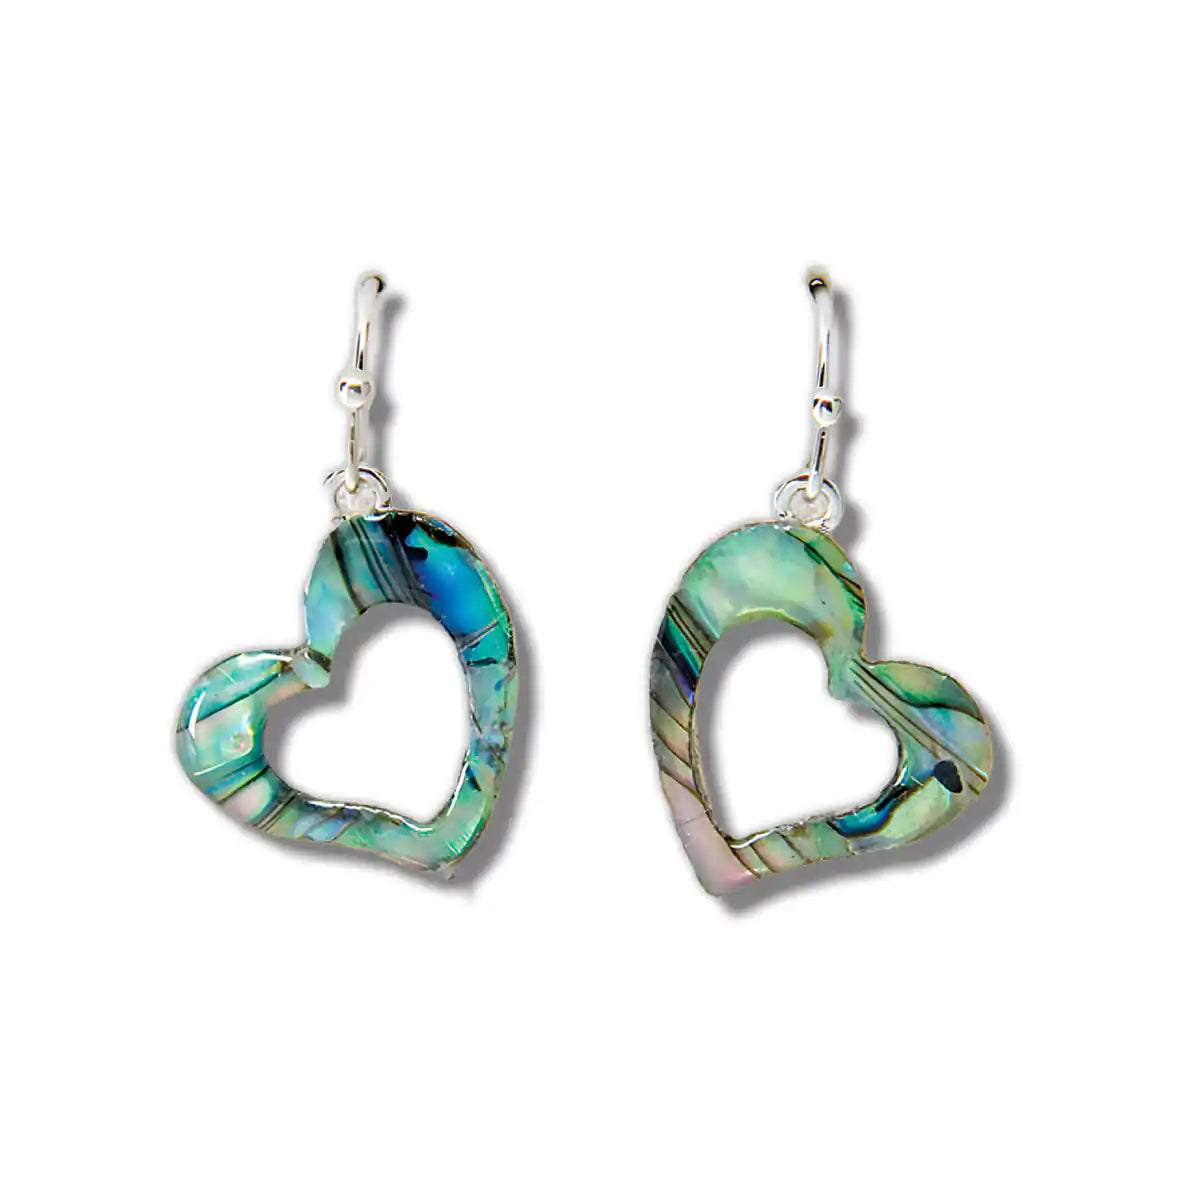 Glacier pearle graceful heart earrings